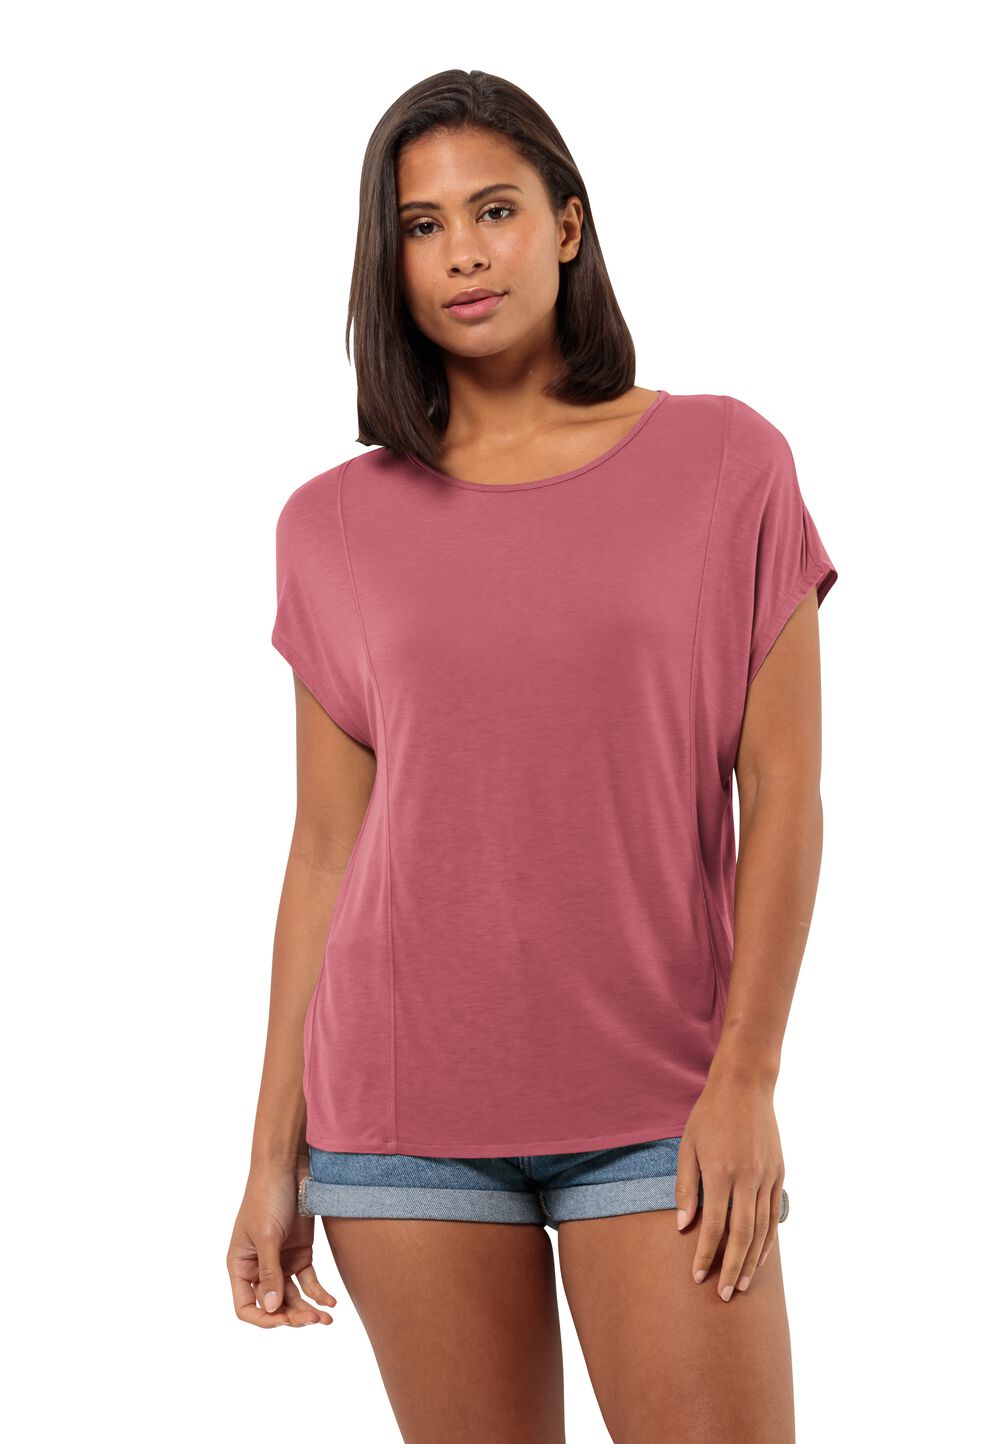 Jack Wolfskin Mola T-Shirt Women T-shirt Dames M soft pink soft pink